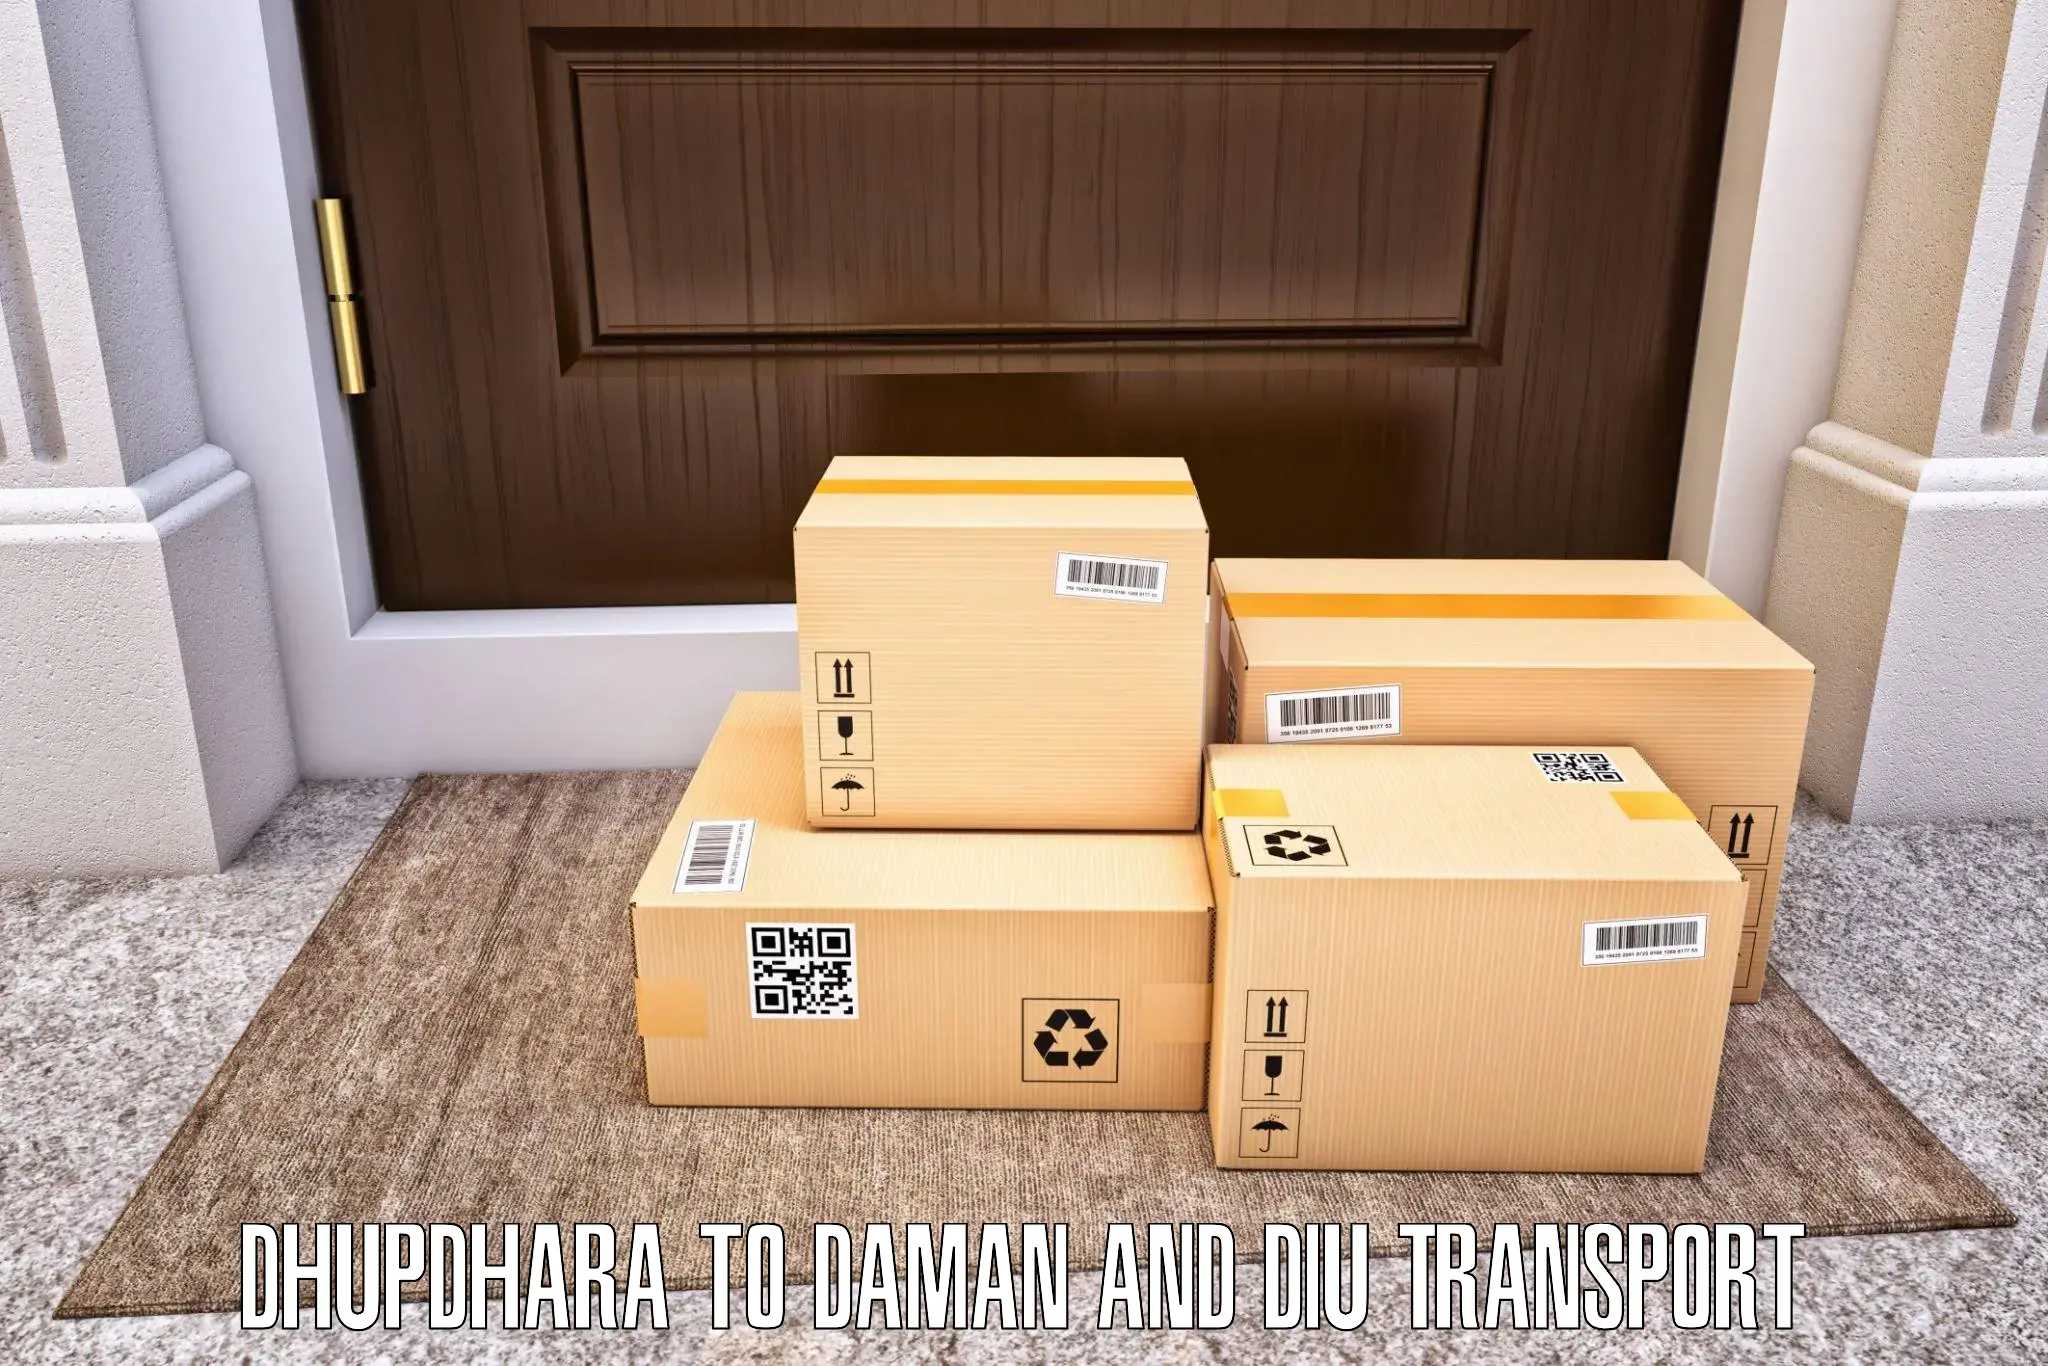 Cargo transport services Dhupdhara to Daman